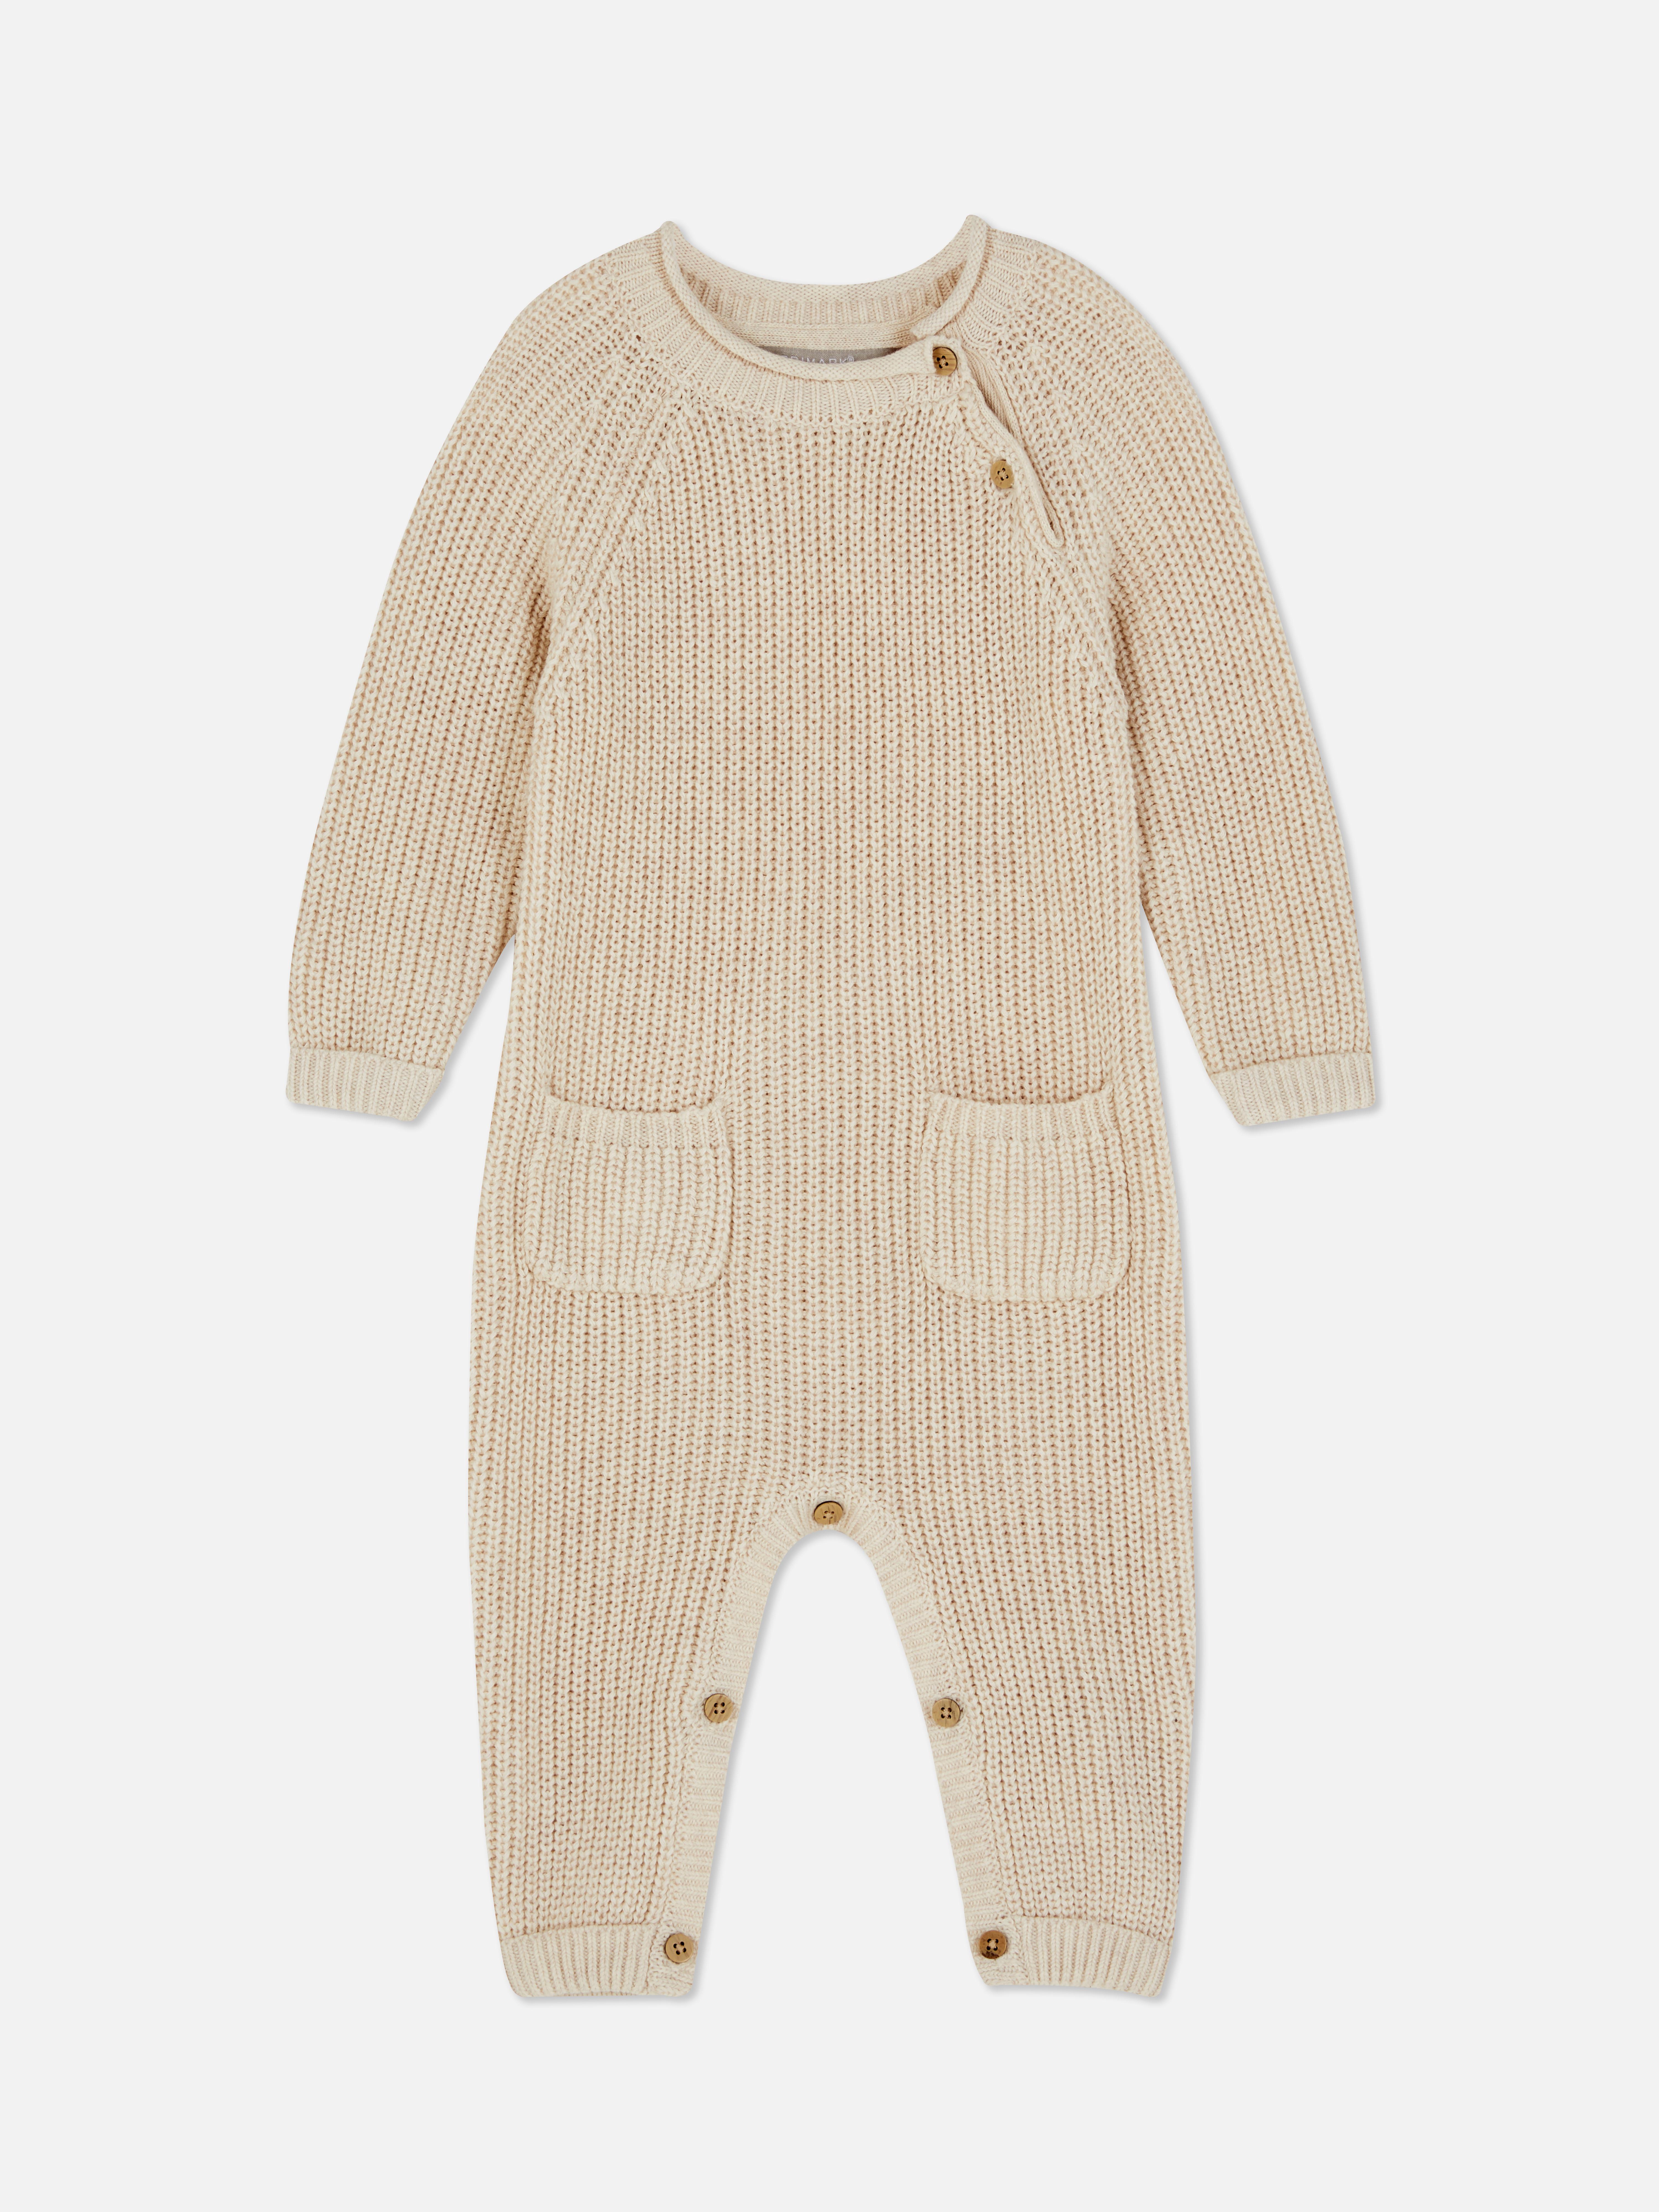 Mono de pijama de punto de algodón con botones | Ropa de niño | Moda para bebés y recién nacidos | Ropa para niños | los productos | España